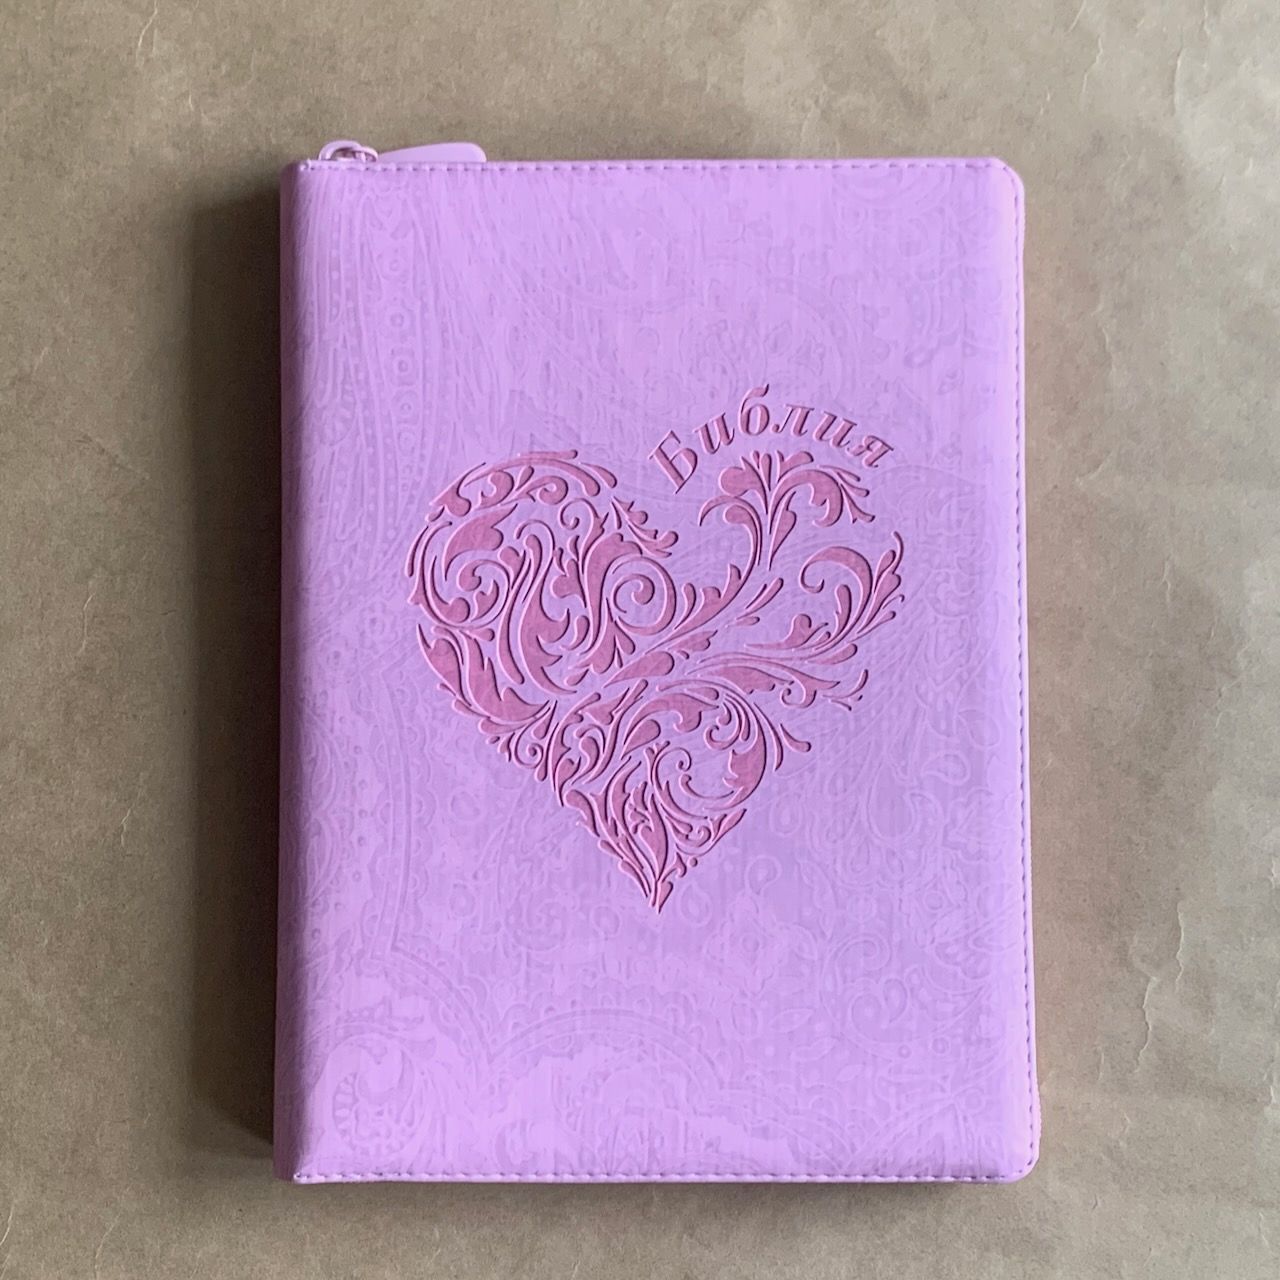 Библия 076zti код G1, дизайн "сердце" термо печать, переплет из искусственной кожи на молнии с индексами, цвет розовый с цветной печатью, размер 180x243 мм